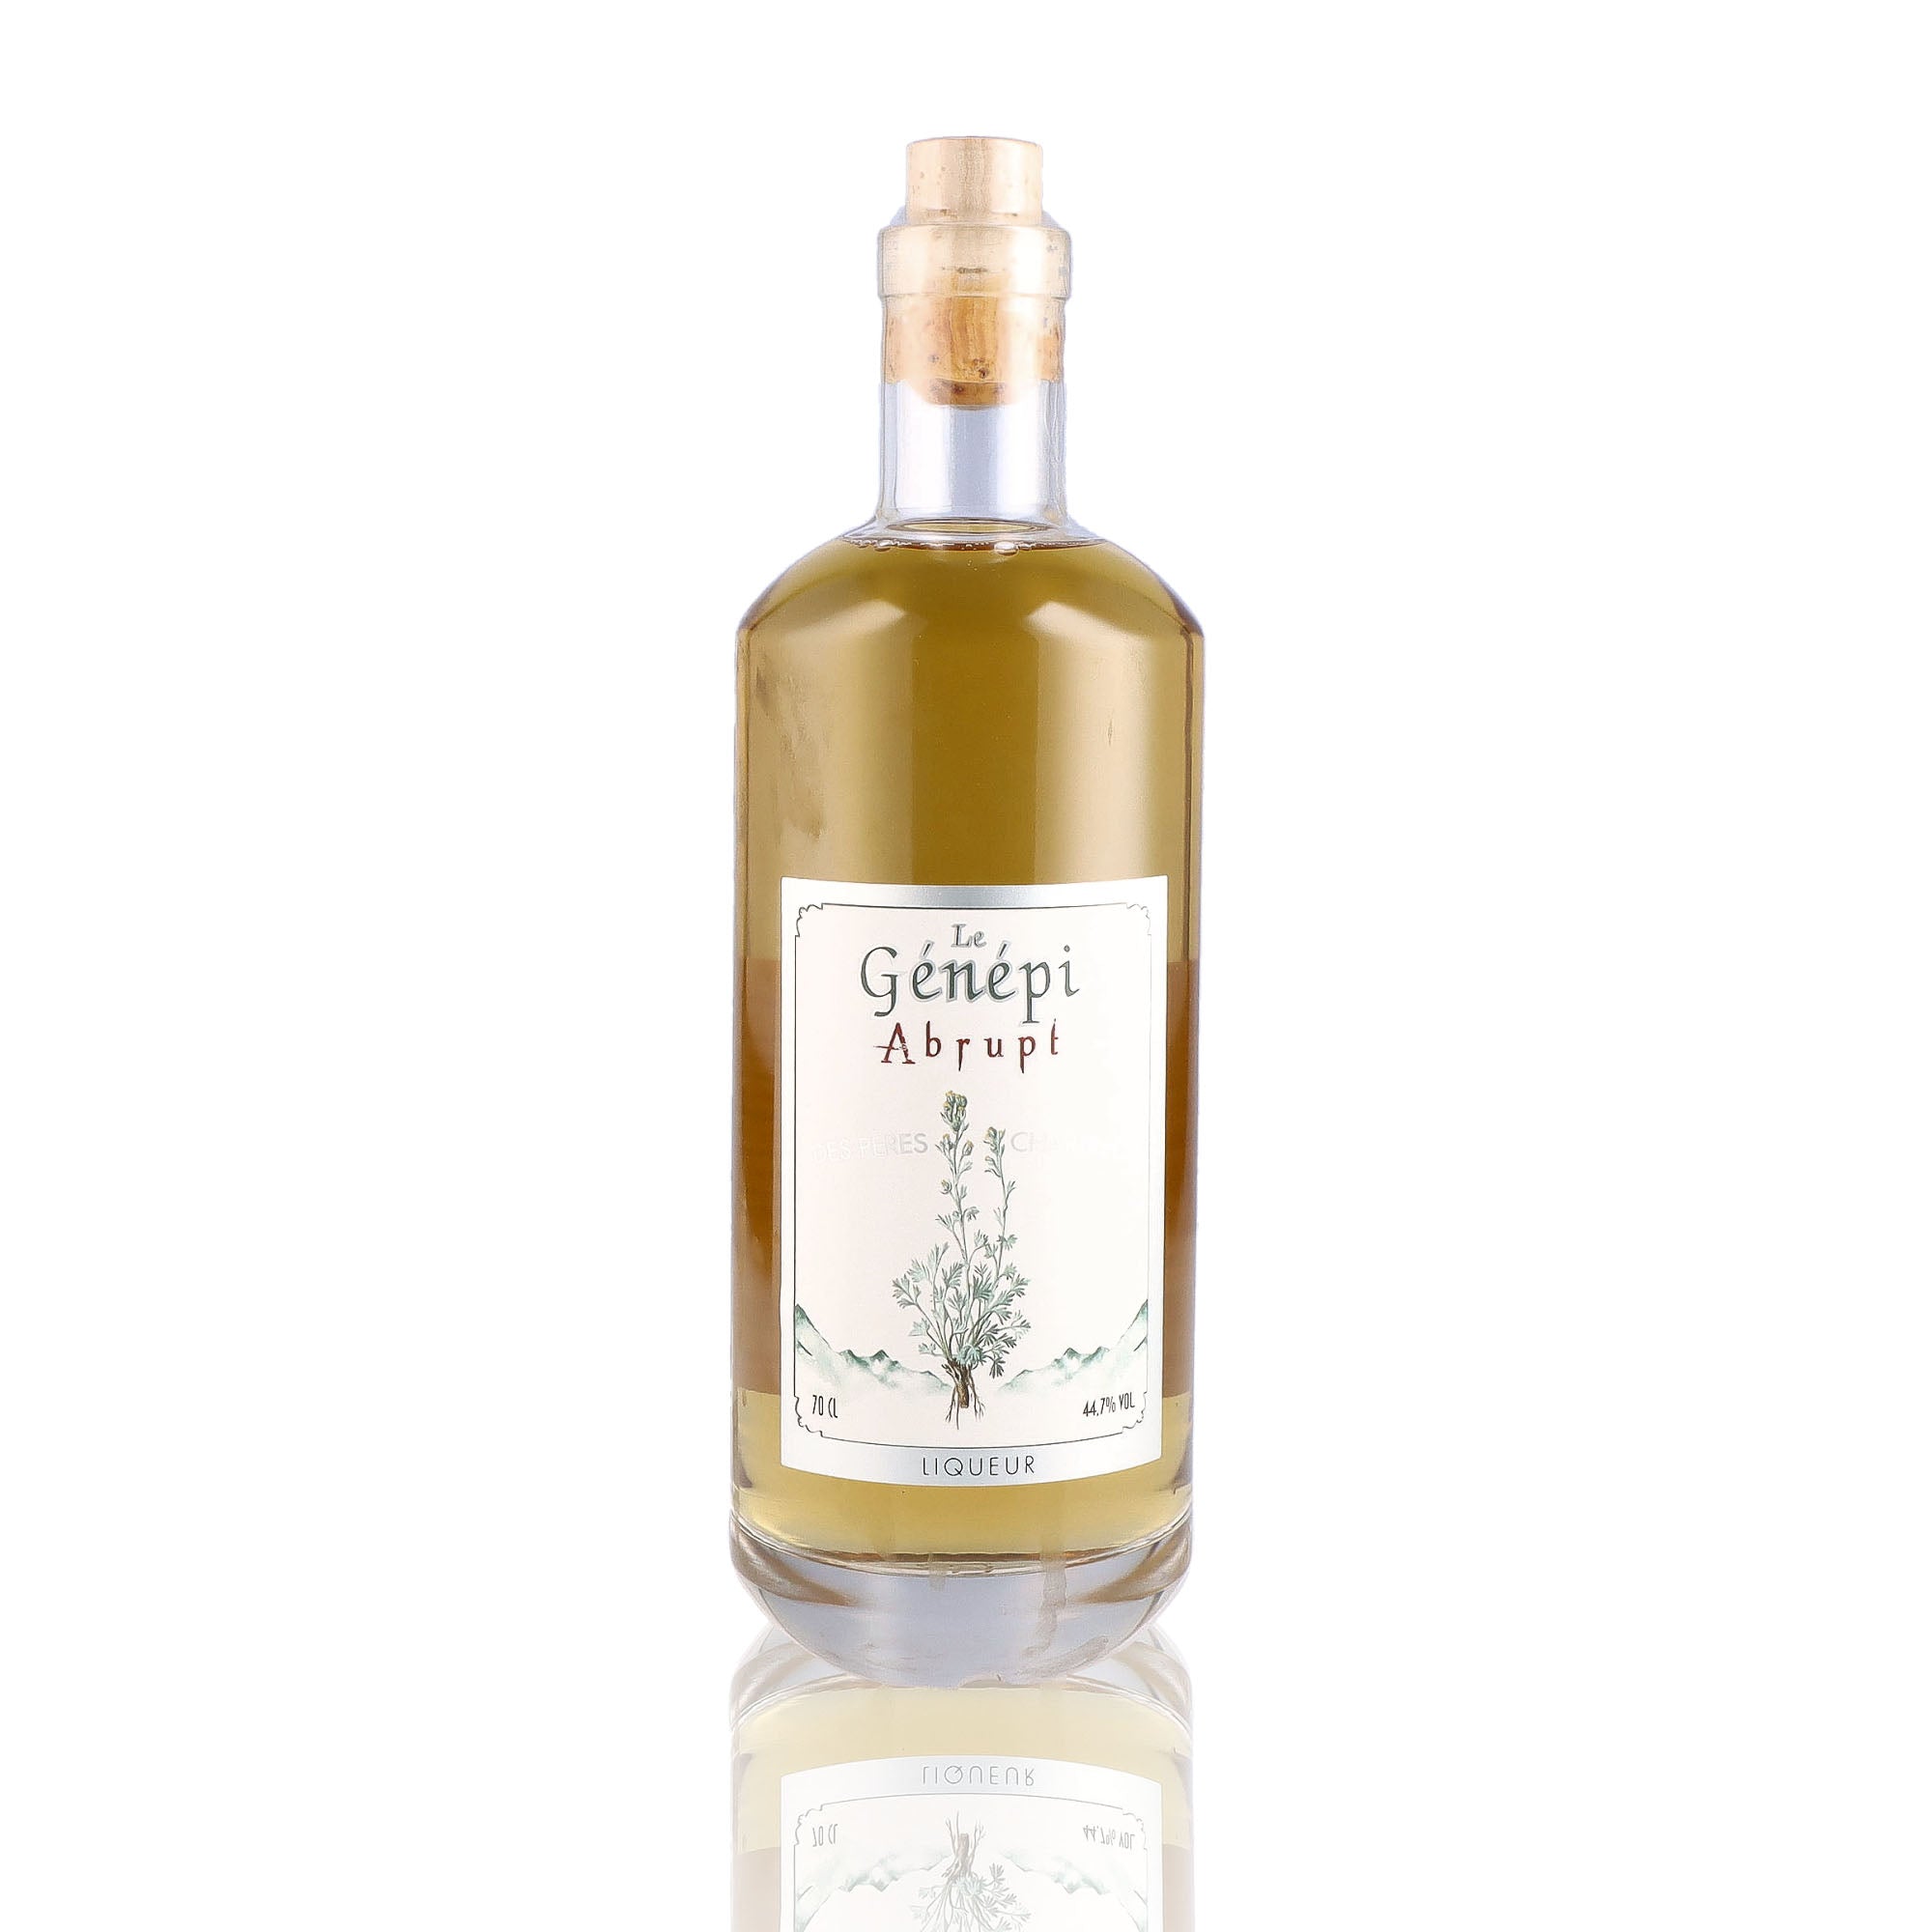 Une bouteille de Liqueur, de la marque Chartreuse, nommée Génépi des Pères Chartreux.